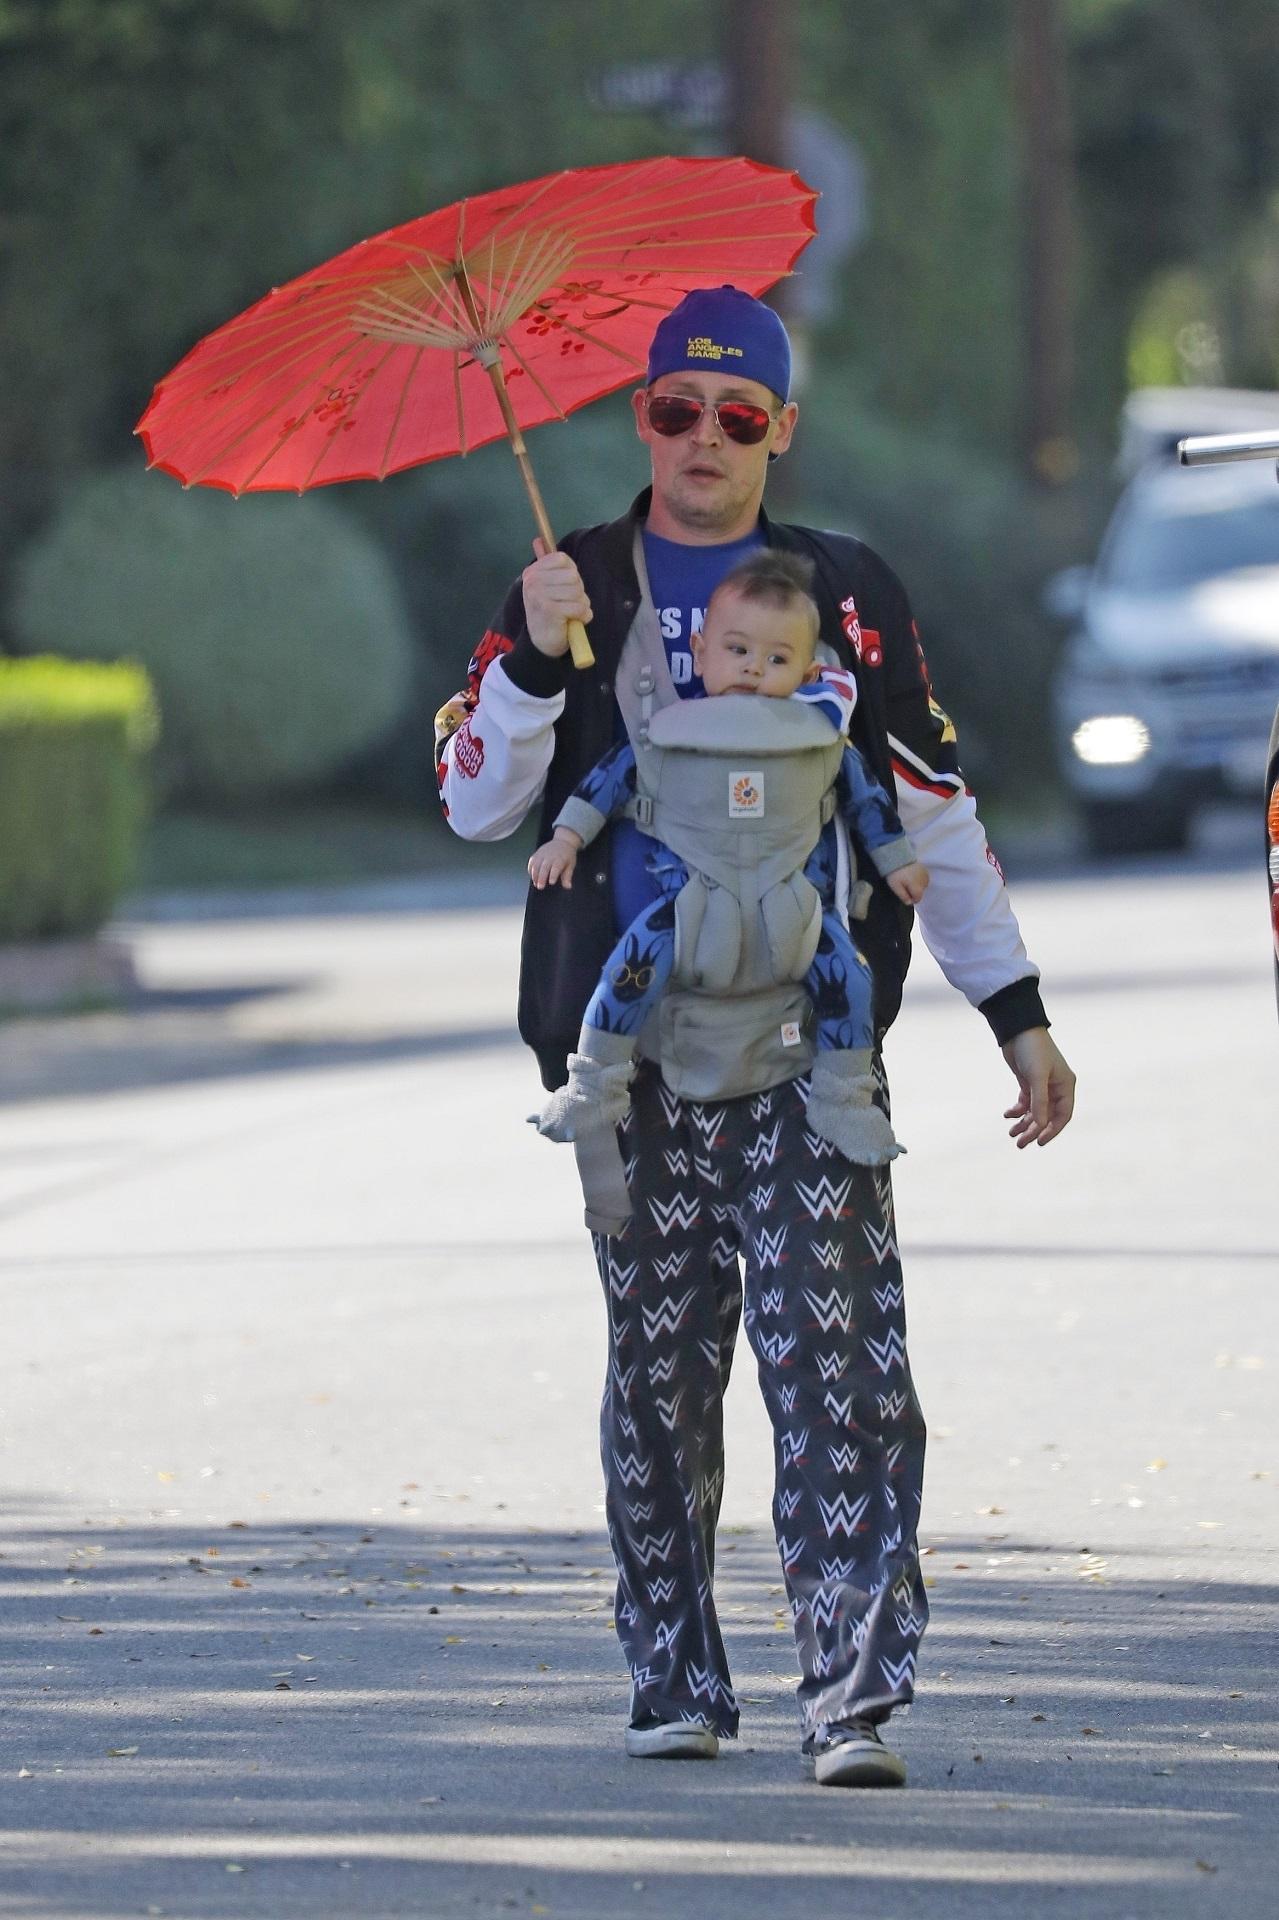 macaulay culkin, pe stradă, cu fiul lui, dakota. are o umbrelă asiatică portocalie